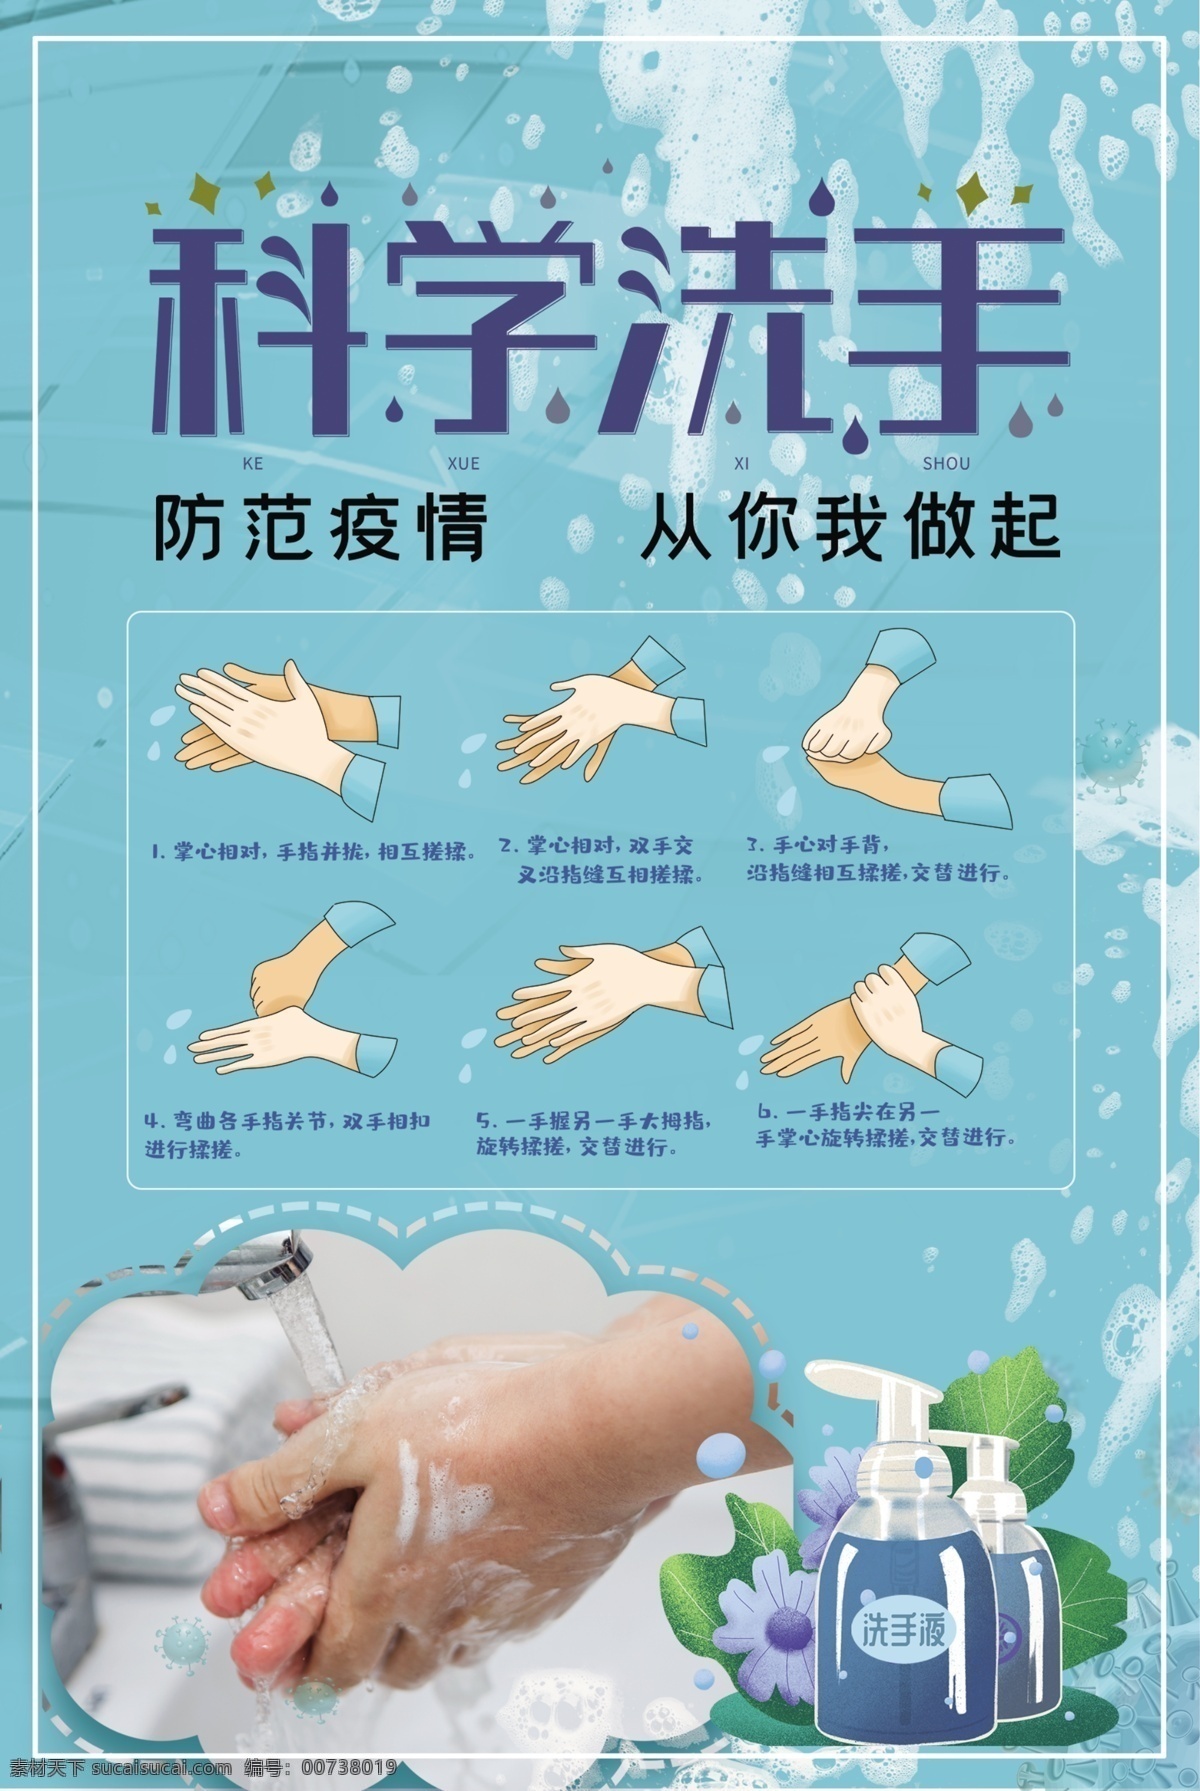 科学洗手 洗手 洗手方法 如何洗手 冠状病毒 疫情防控 设计类